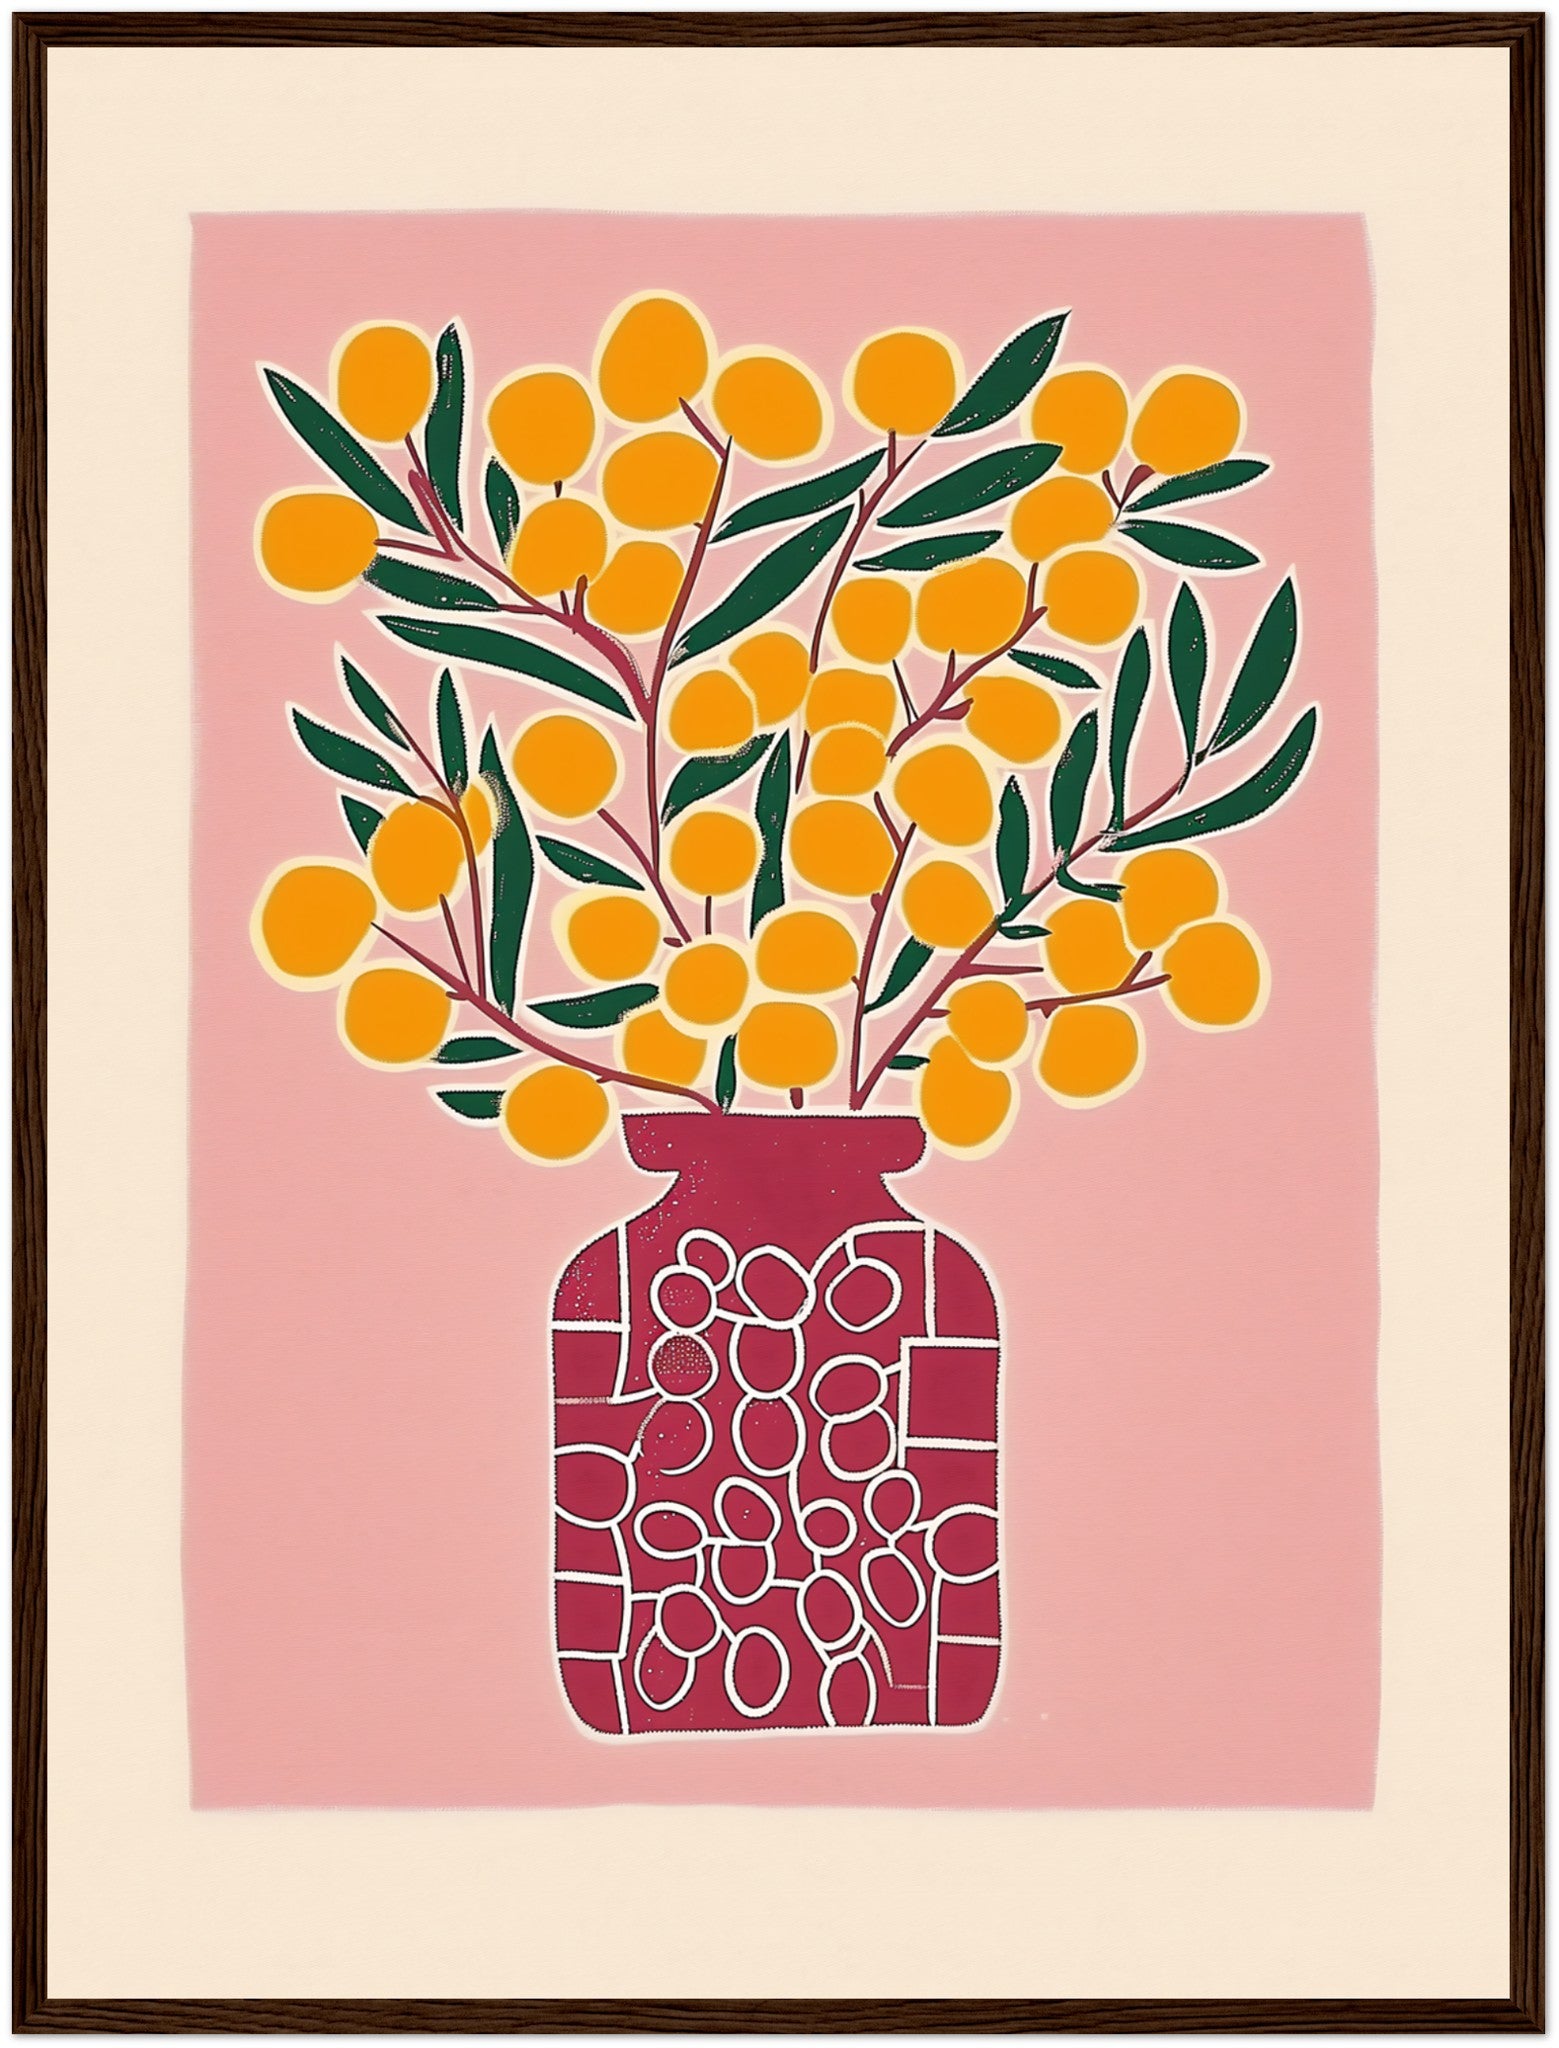 A framed illustration of a vibrant orange fruit plant in a patterned vase.